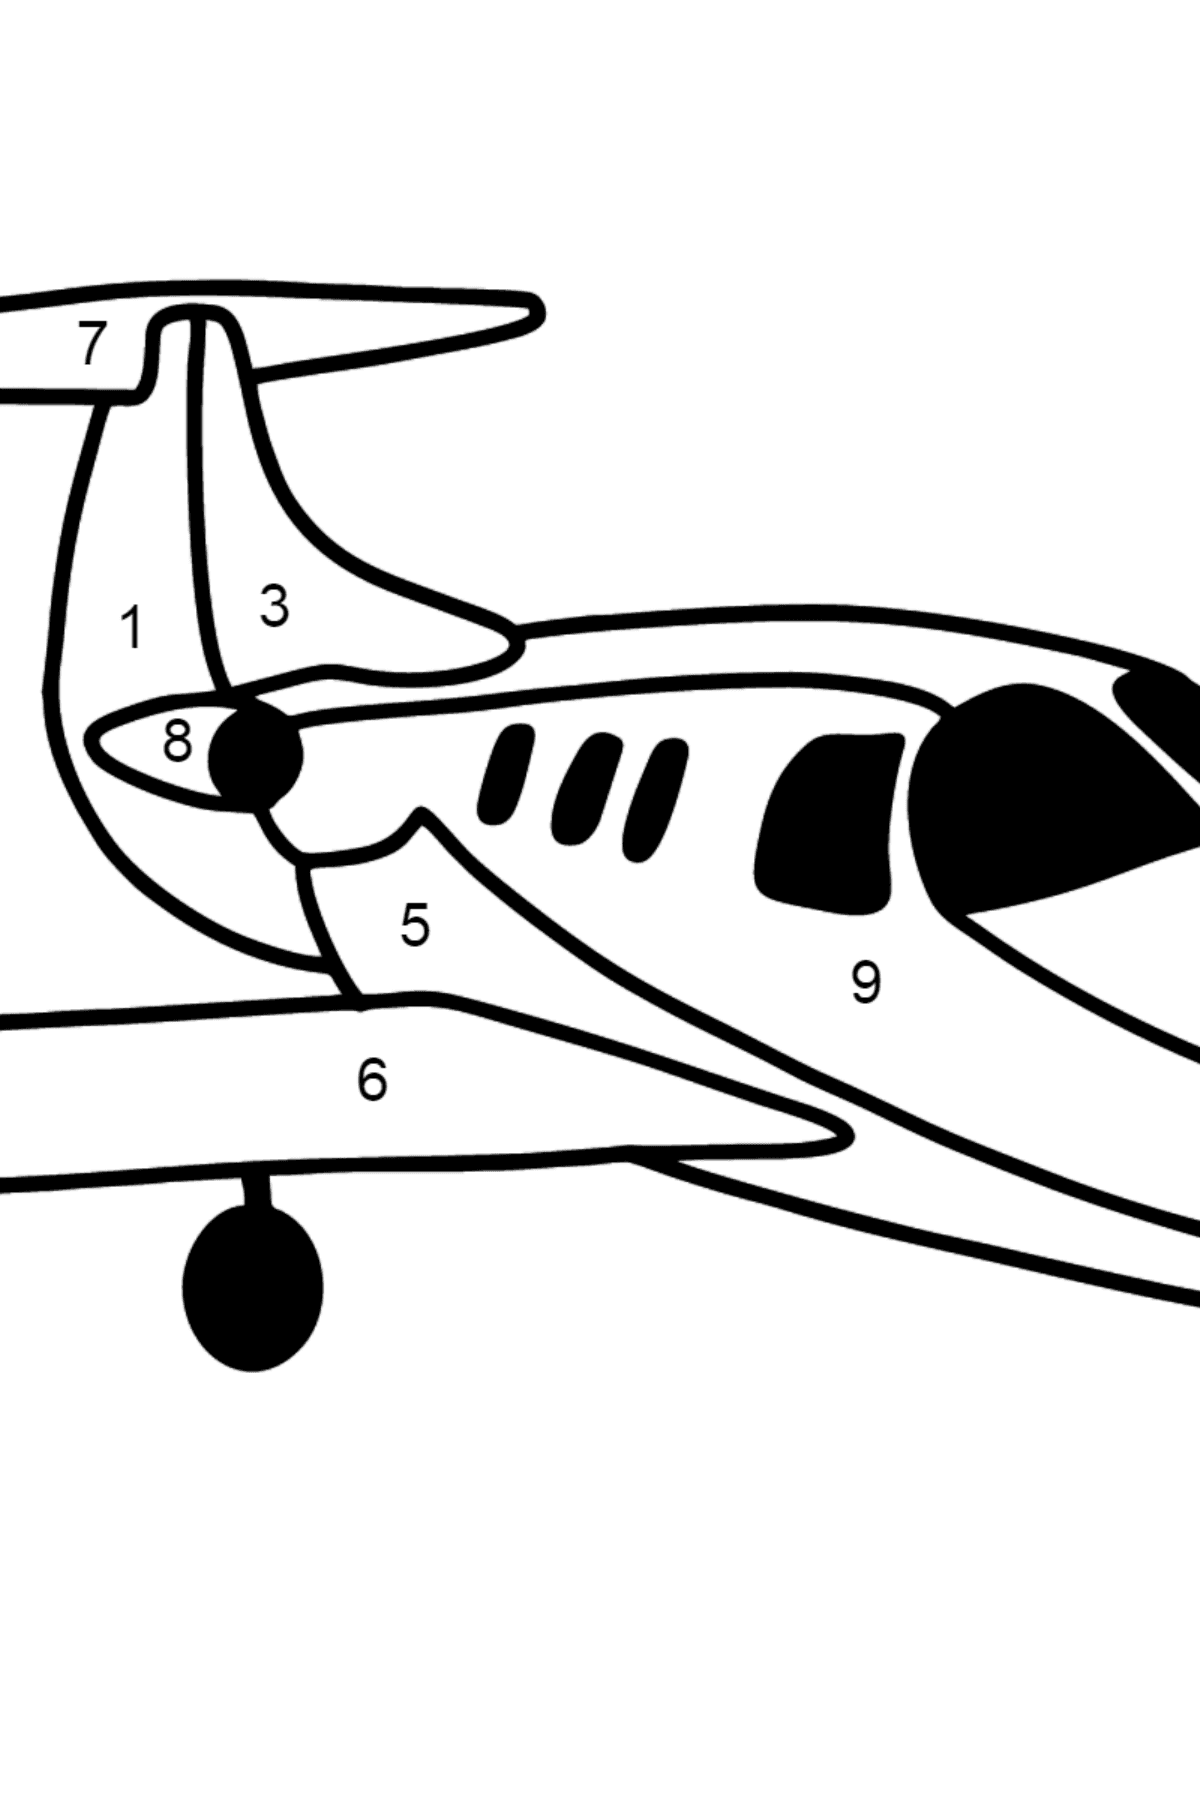 Coloriage - Jet privé - Coloriage par Chiffres pour les Enfants